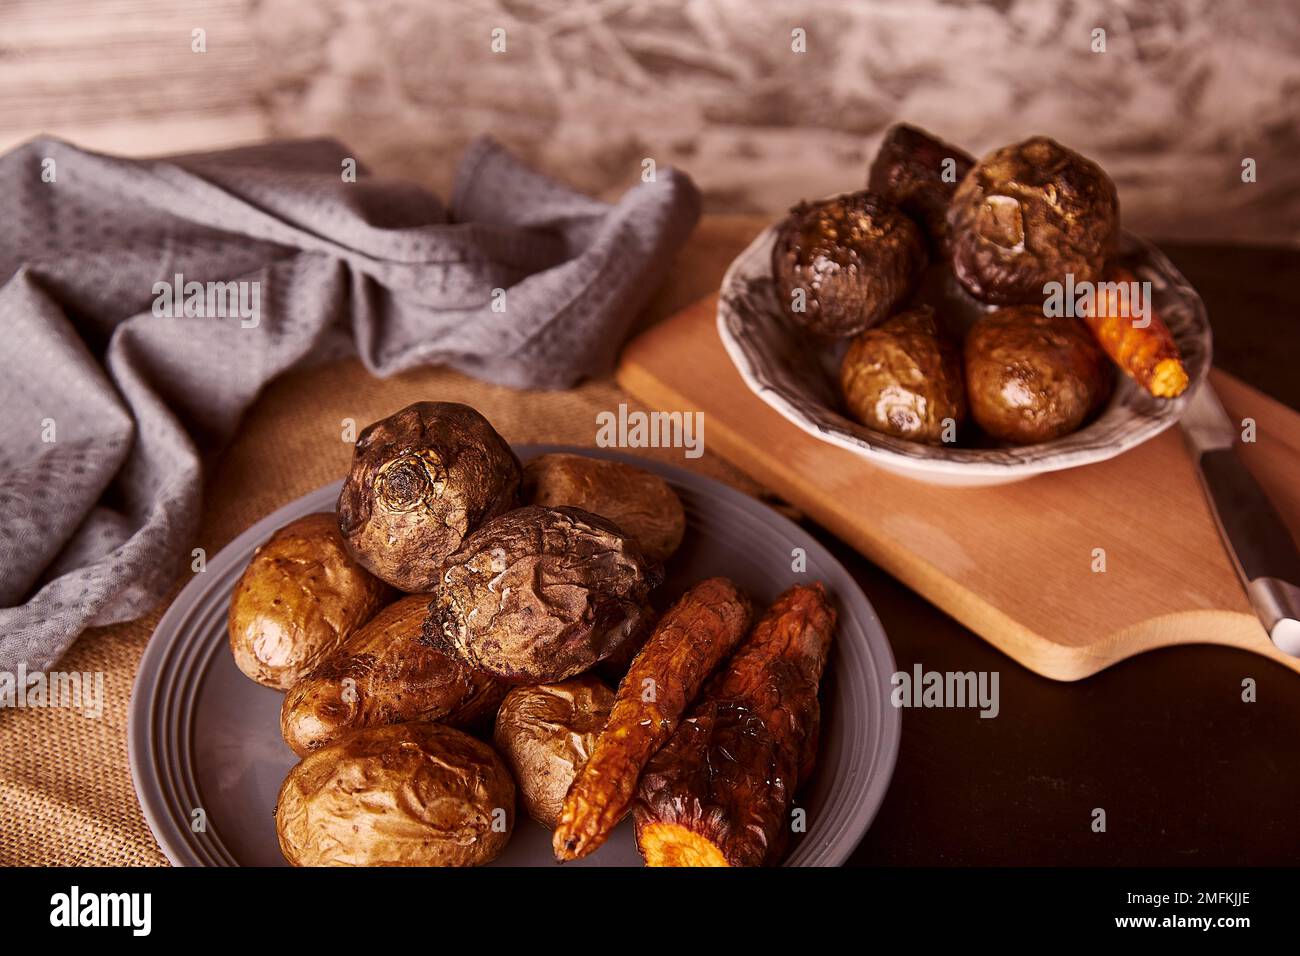 Verdure sane al forno su sfondo rustico - carote, patate, barbabietole. Dieta alimentare intera, dieta mediterranea Foto Stock